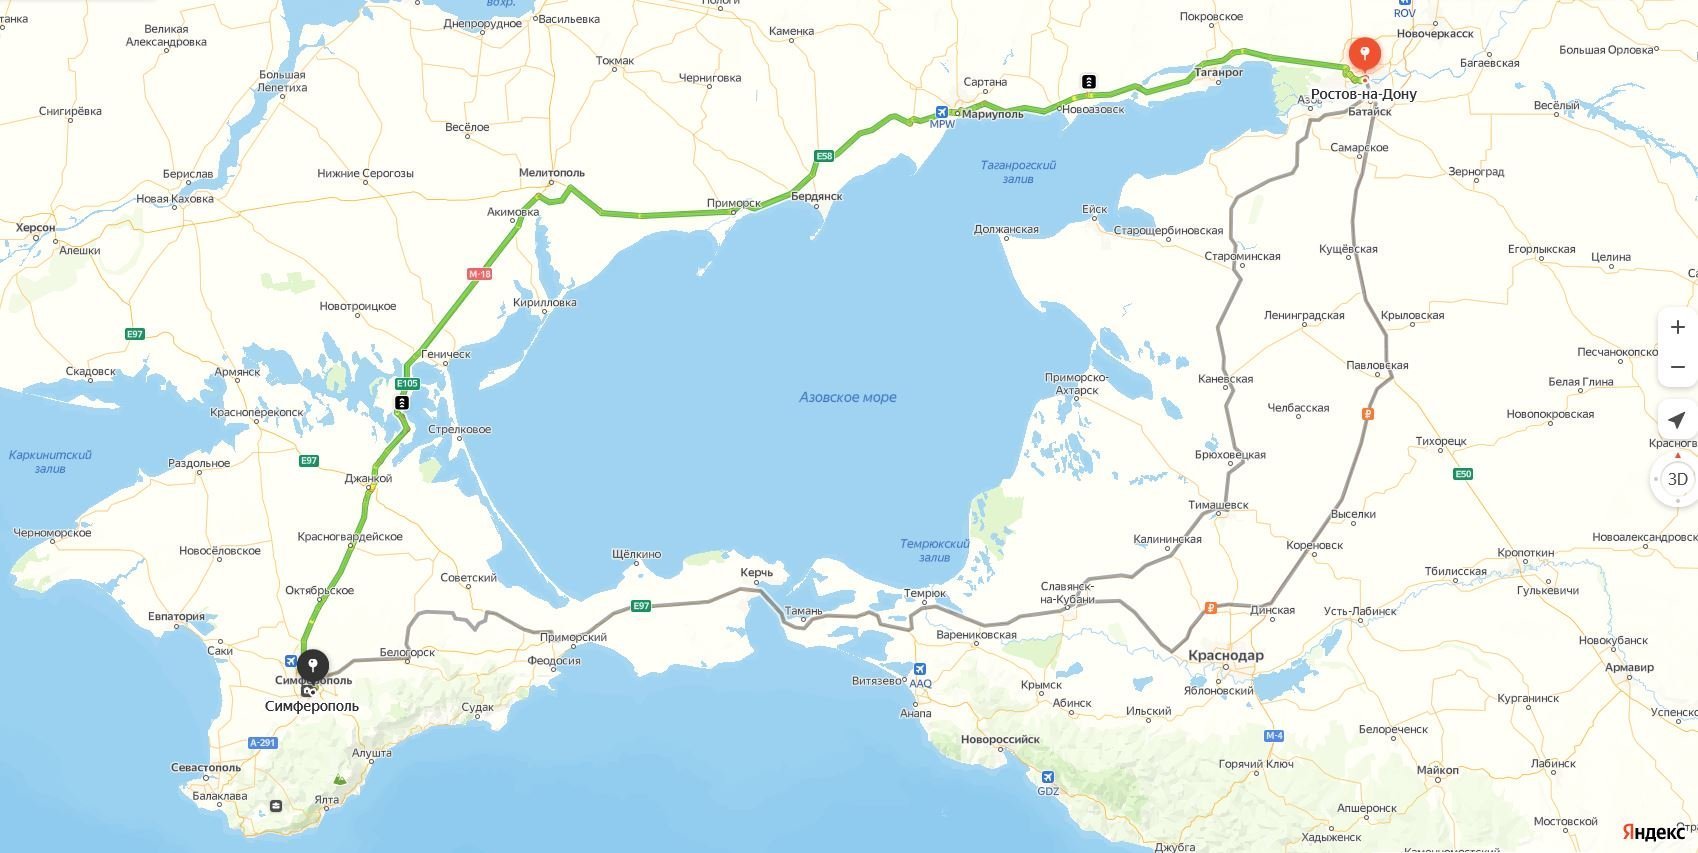 Схема проезда по сухопутному пути в Крым в Яндекс.Навигаторе